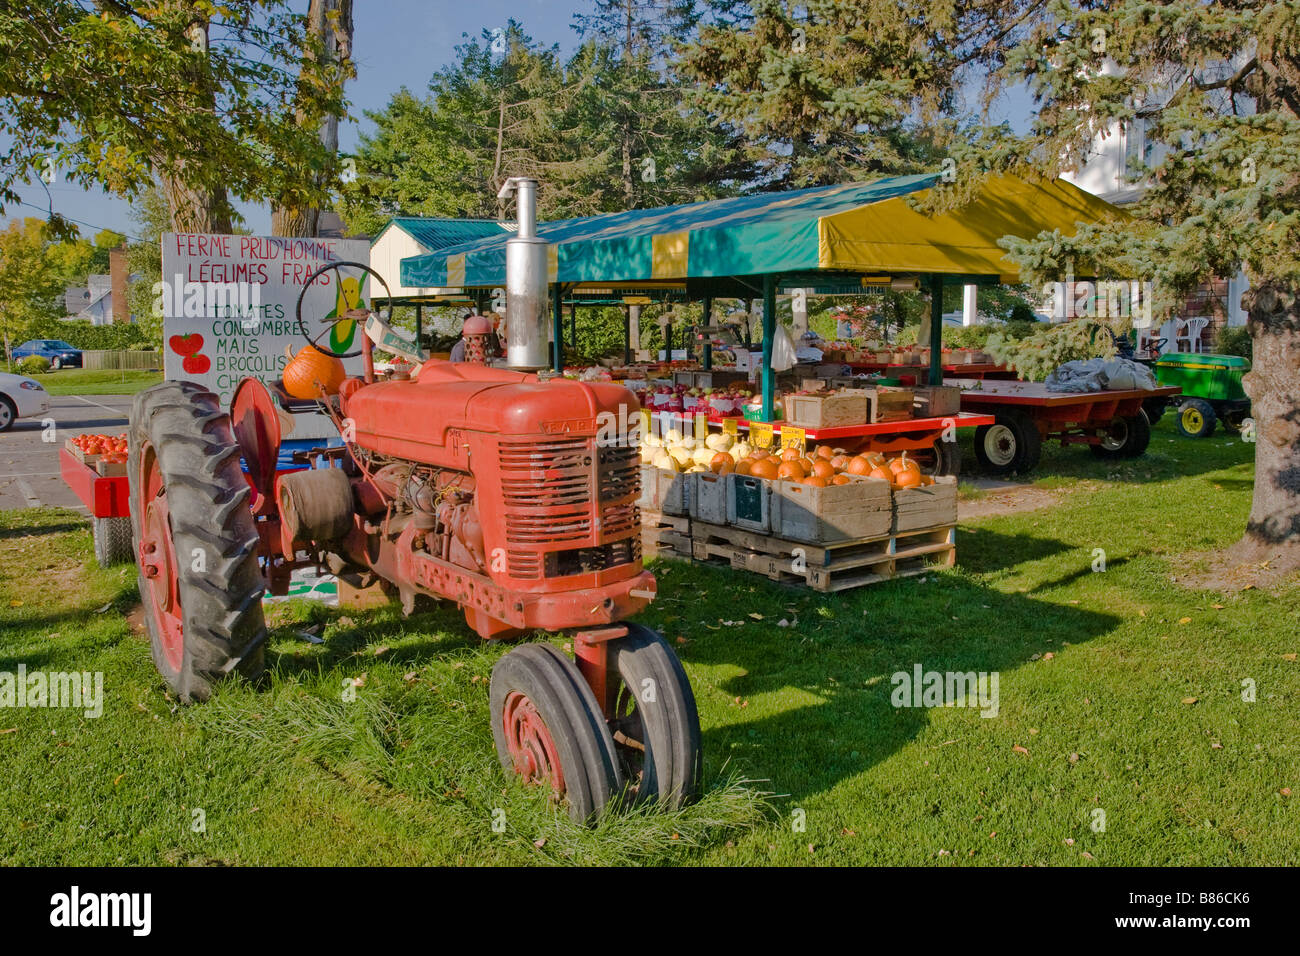 Farmall farm tractor Stock Photo